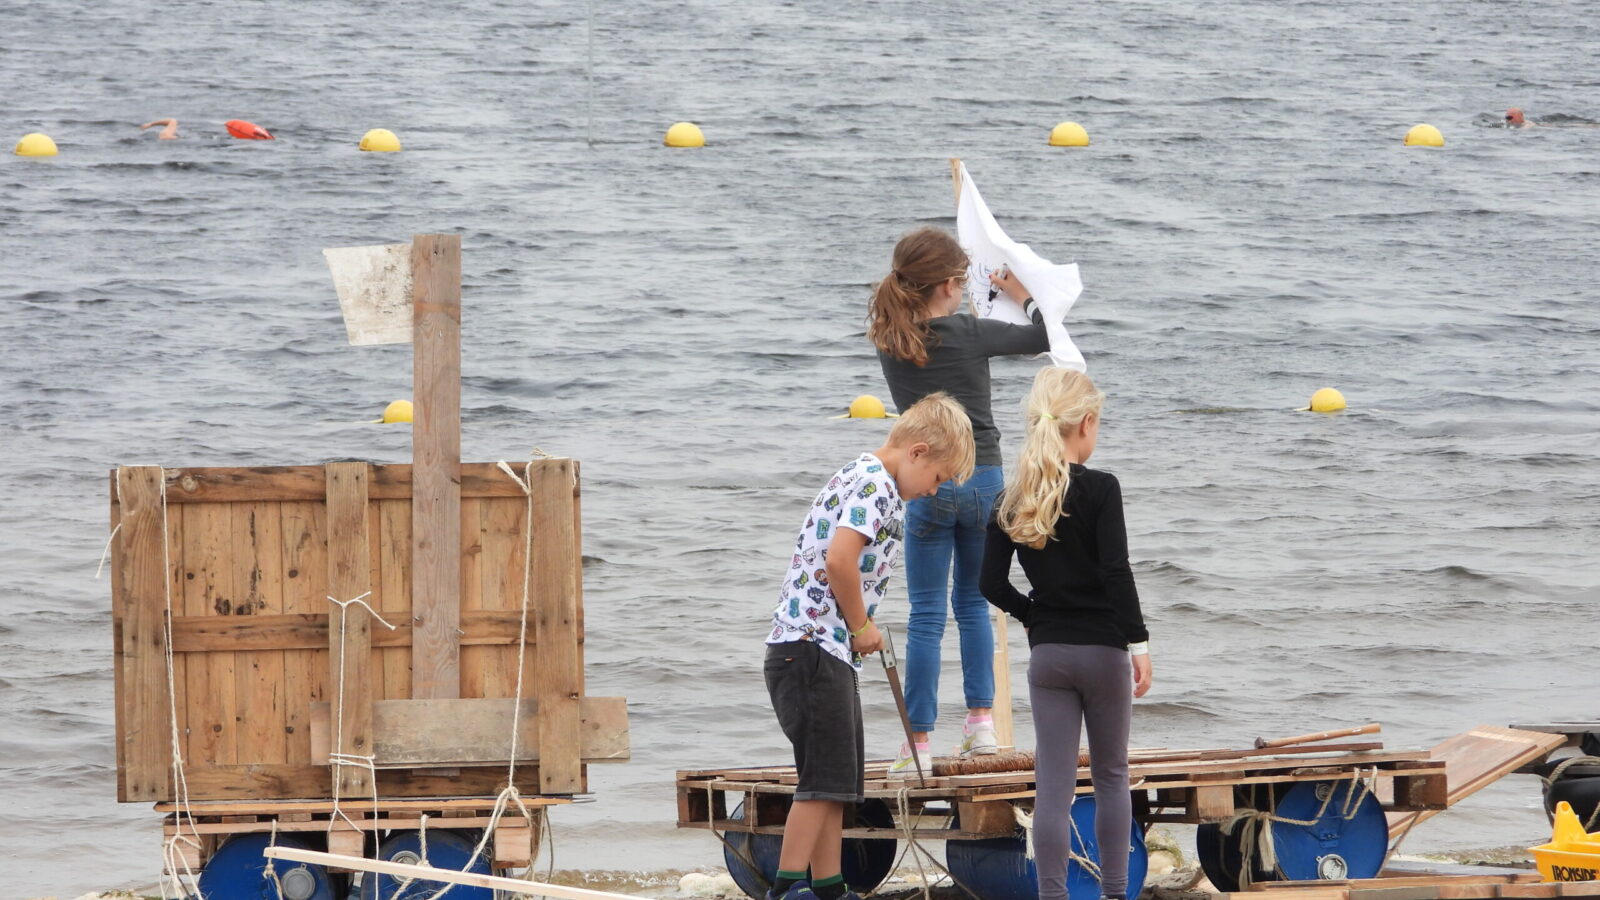 Jonge vlottenbouwers weer aan de slag in Meerstad